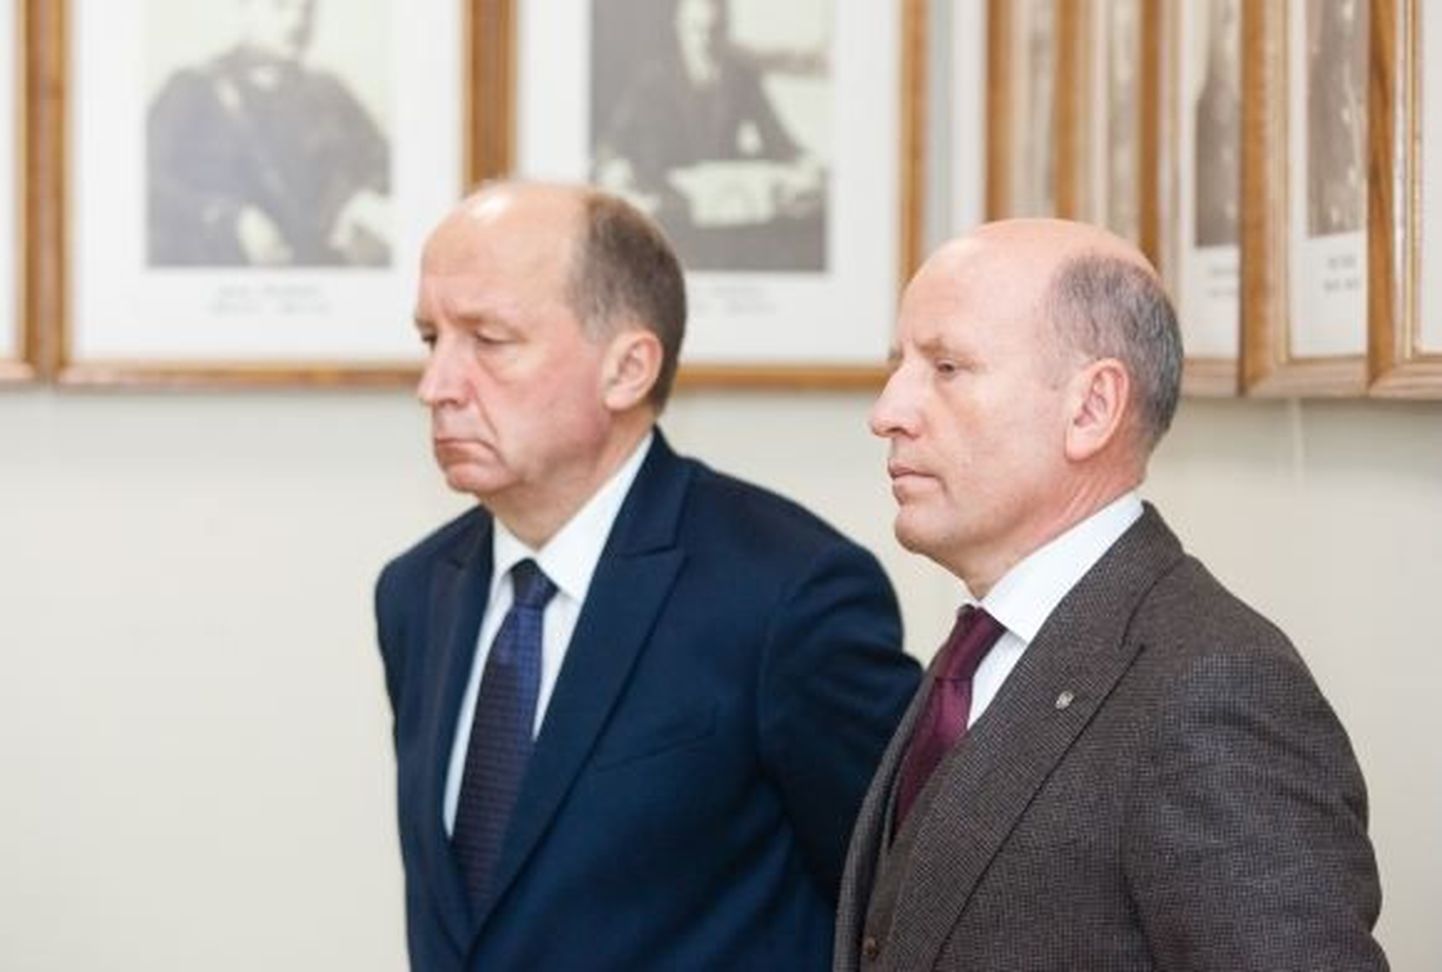 Leedu peaminister Andrius Kubilius (vasakul) ja Raimundas Palaitis, kelle Kubilius otsustas siseministri ametist tagandada.